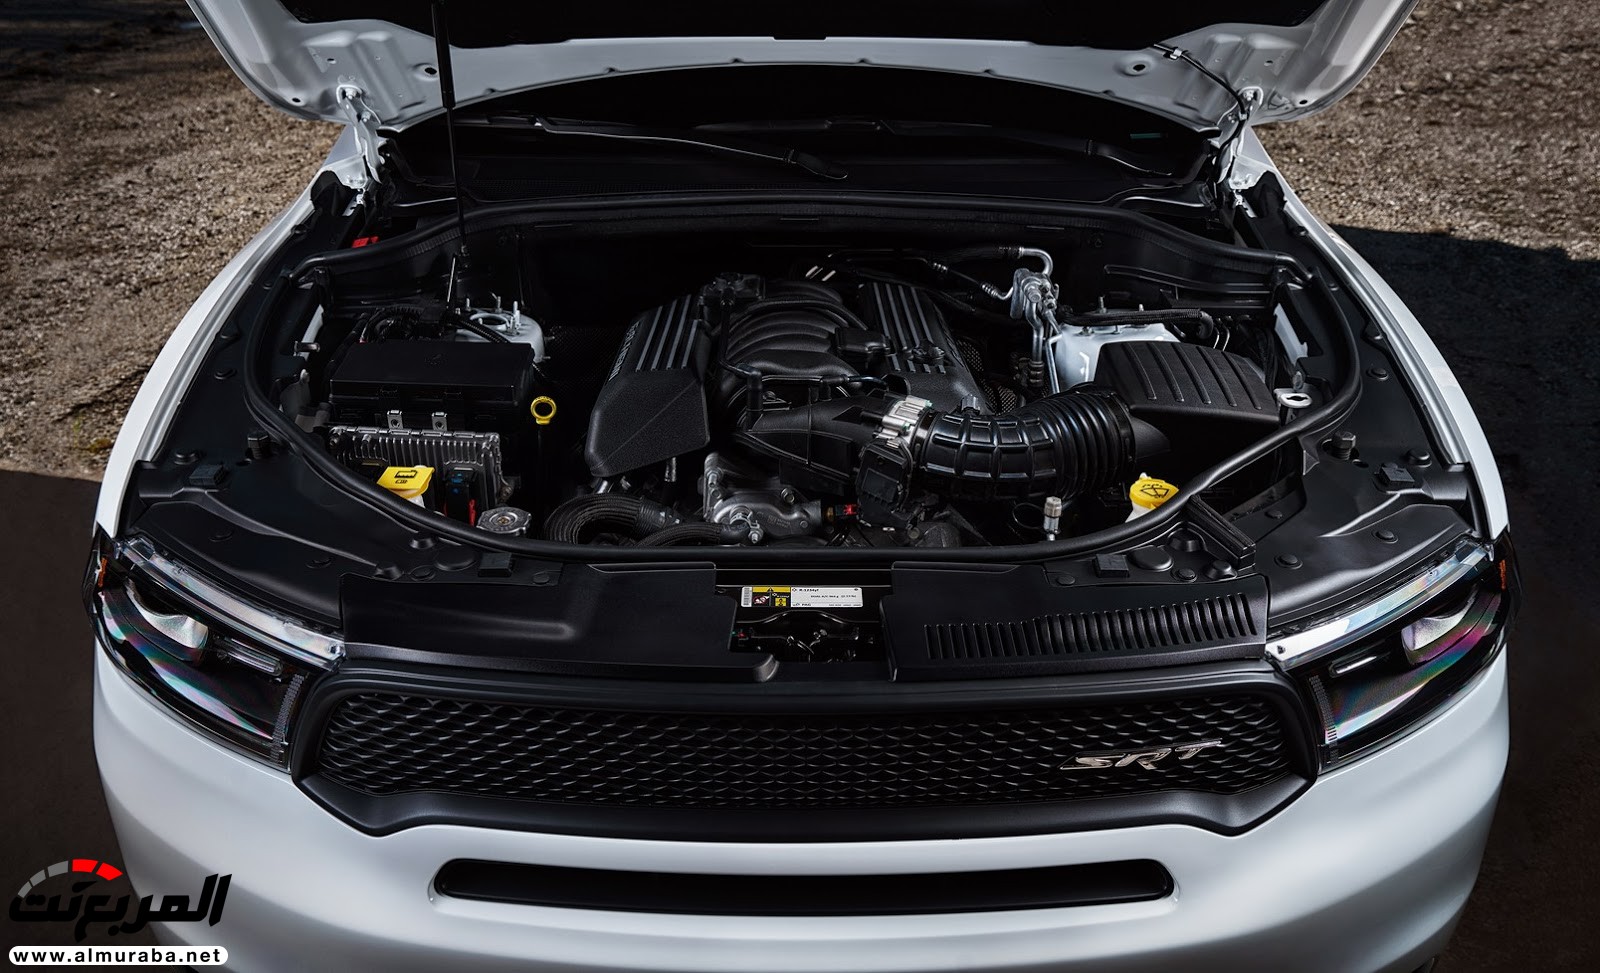 "دودج" دورانجو إس آر تي الجديدة كليا 2018 يكشف عنها بمحرك 475 حصان Dodge Durango SRT 44